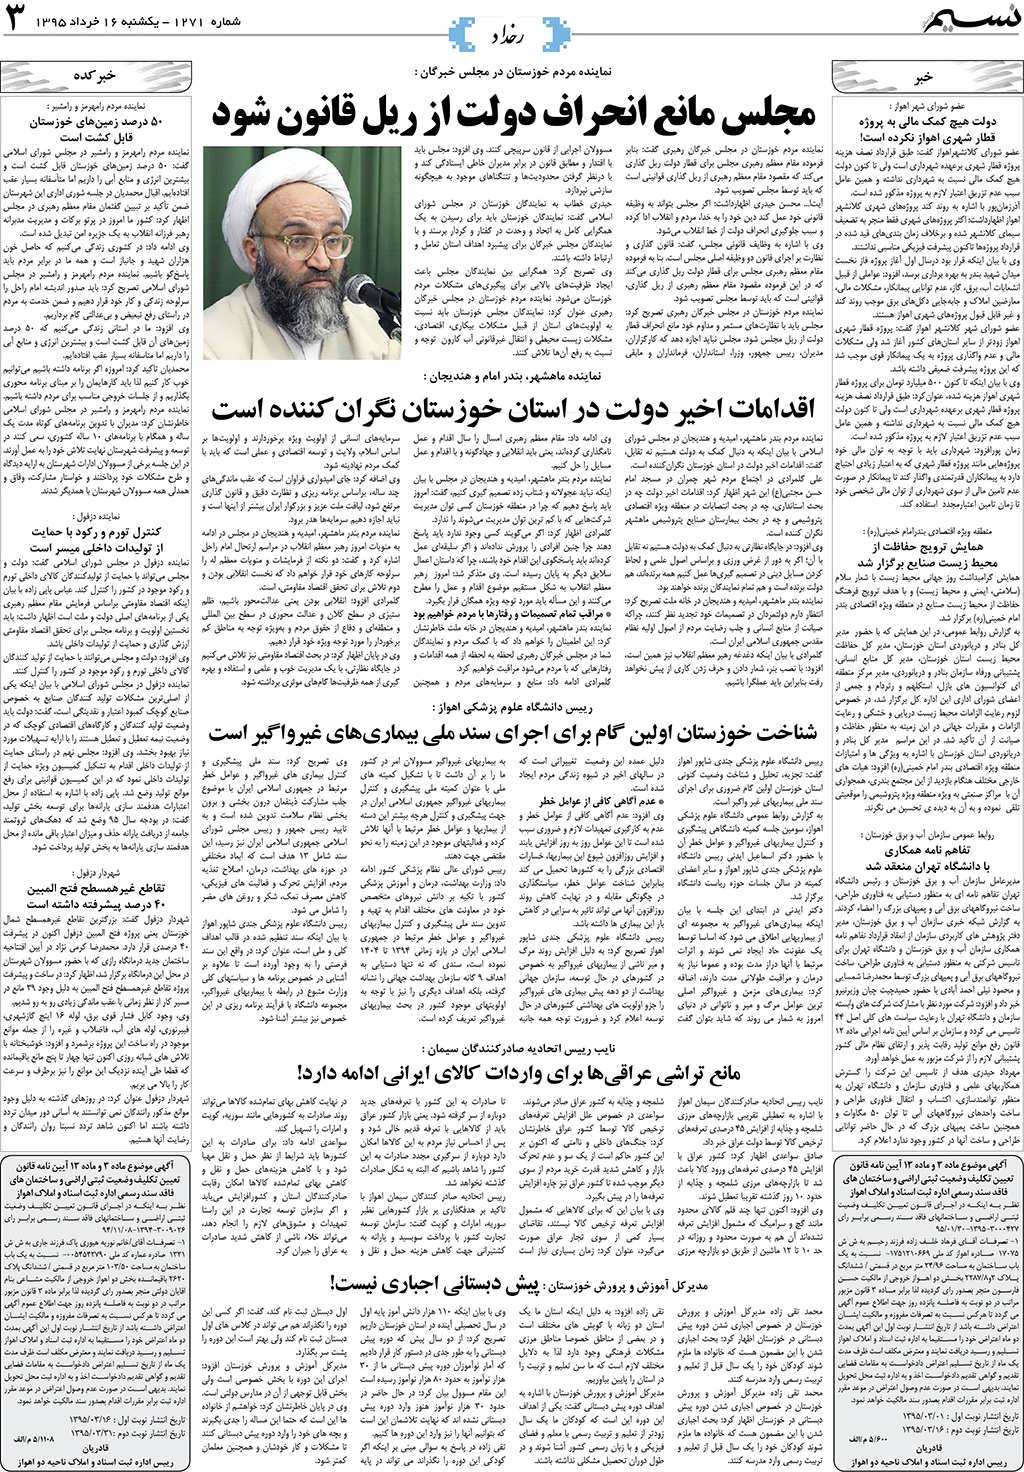 صفحه رخداد روزنامه نسیم شماره 1271